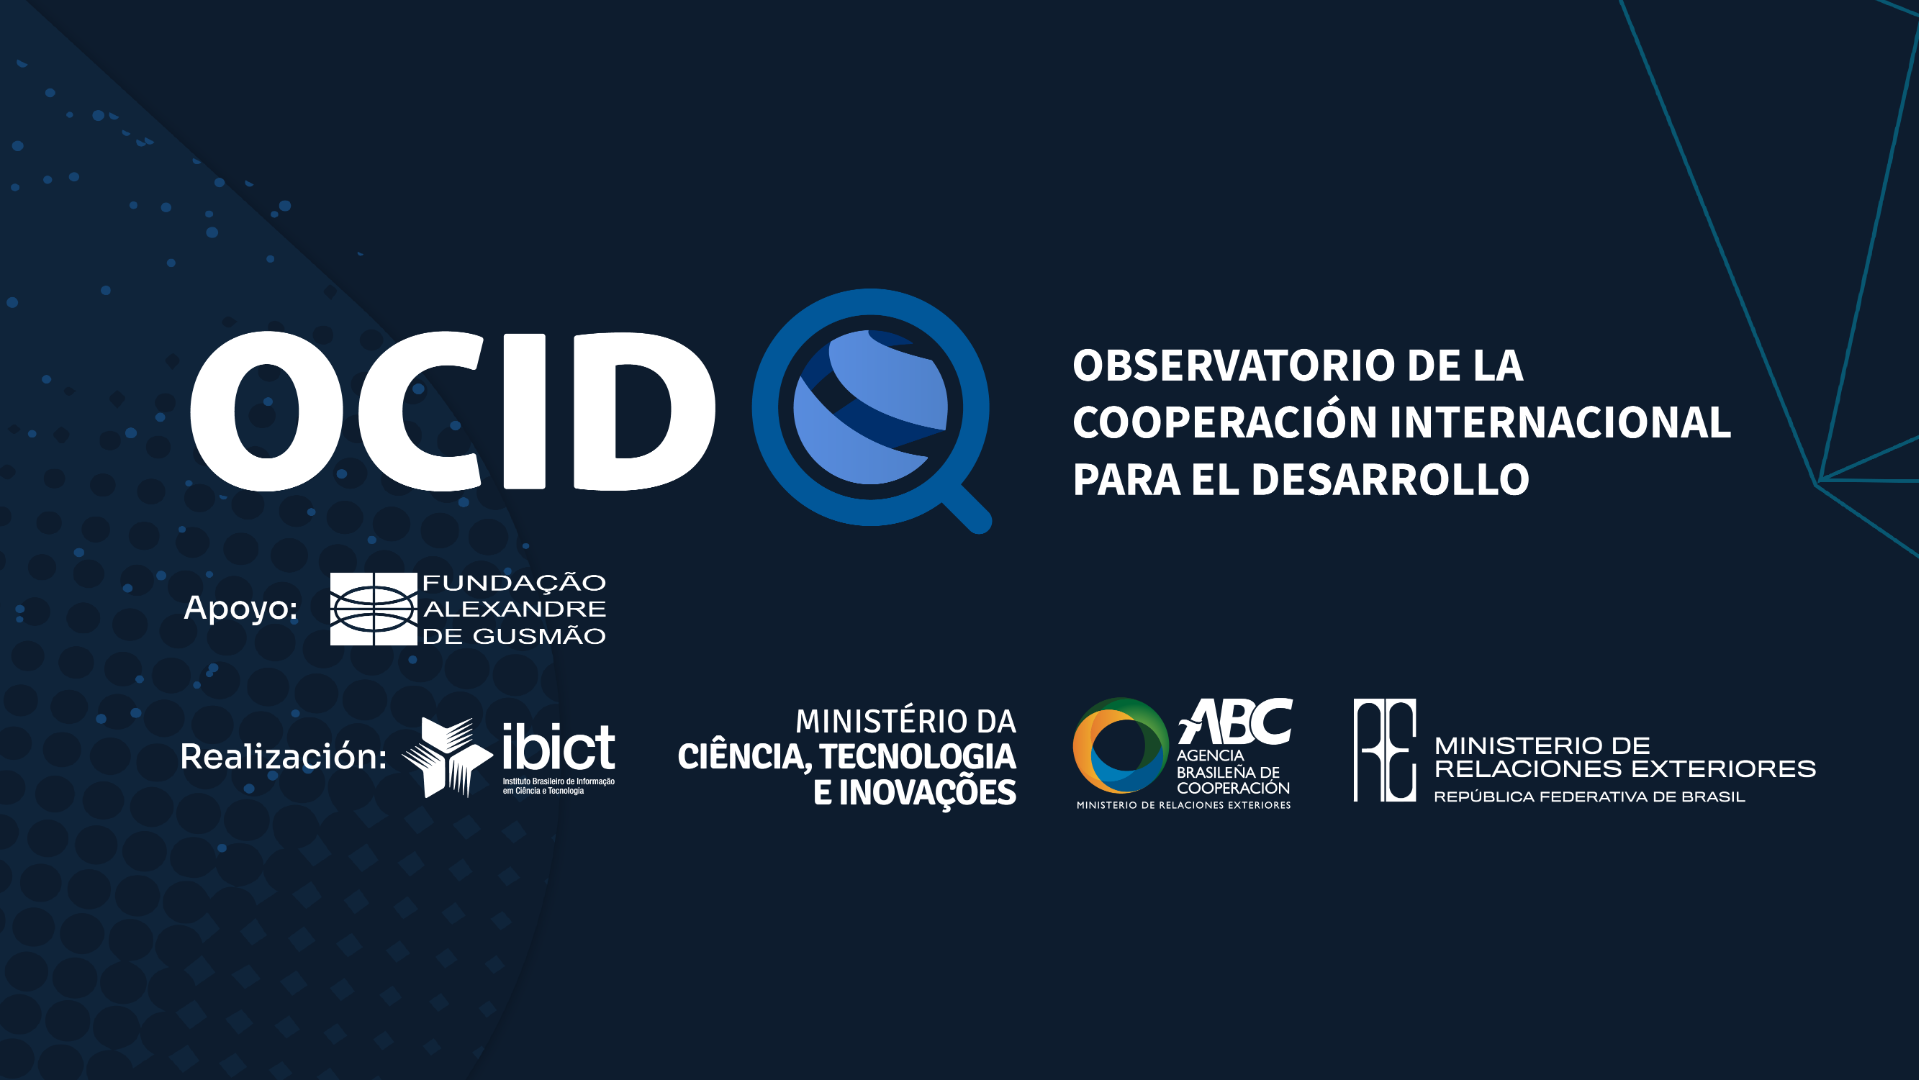 Observatorio de Cooperación Internacional para el Desarrollo (OCID)